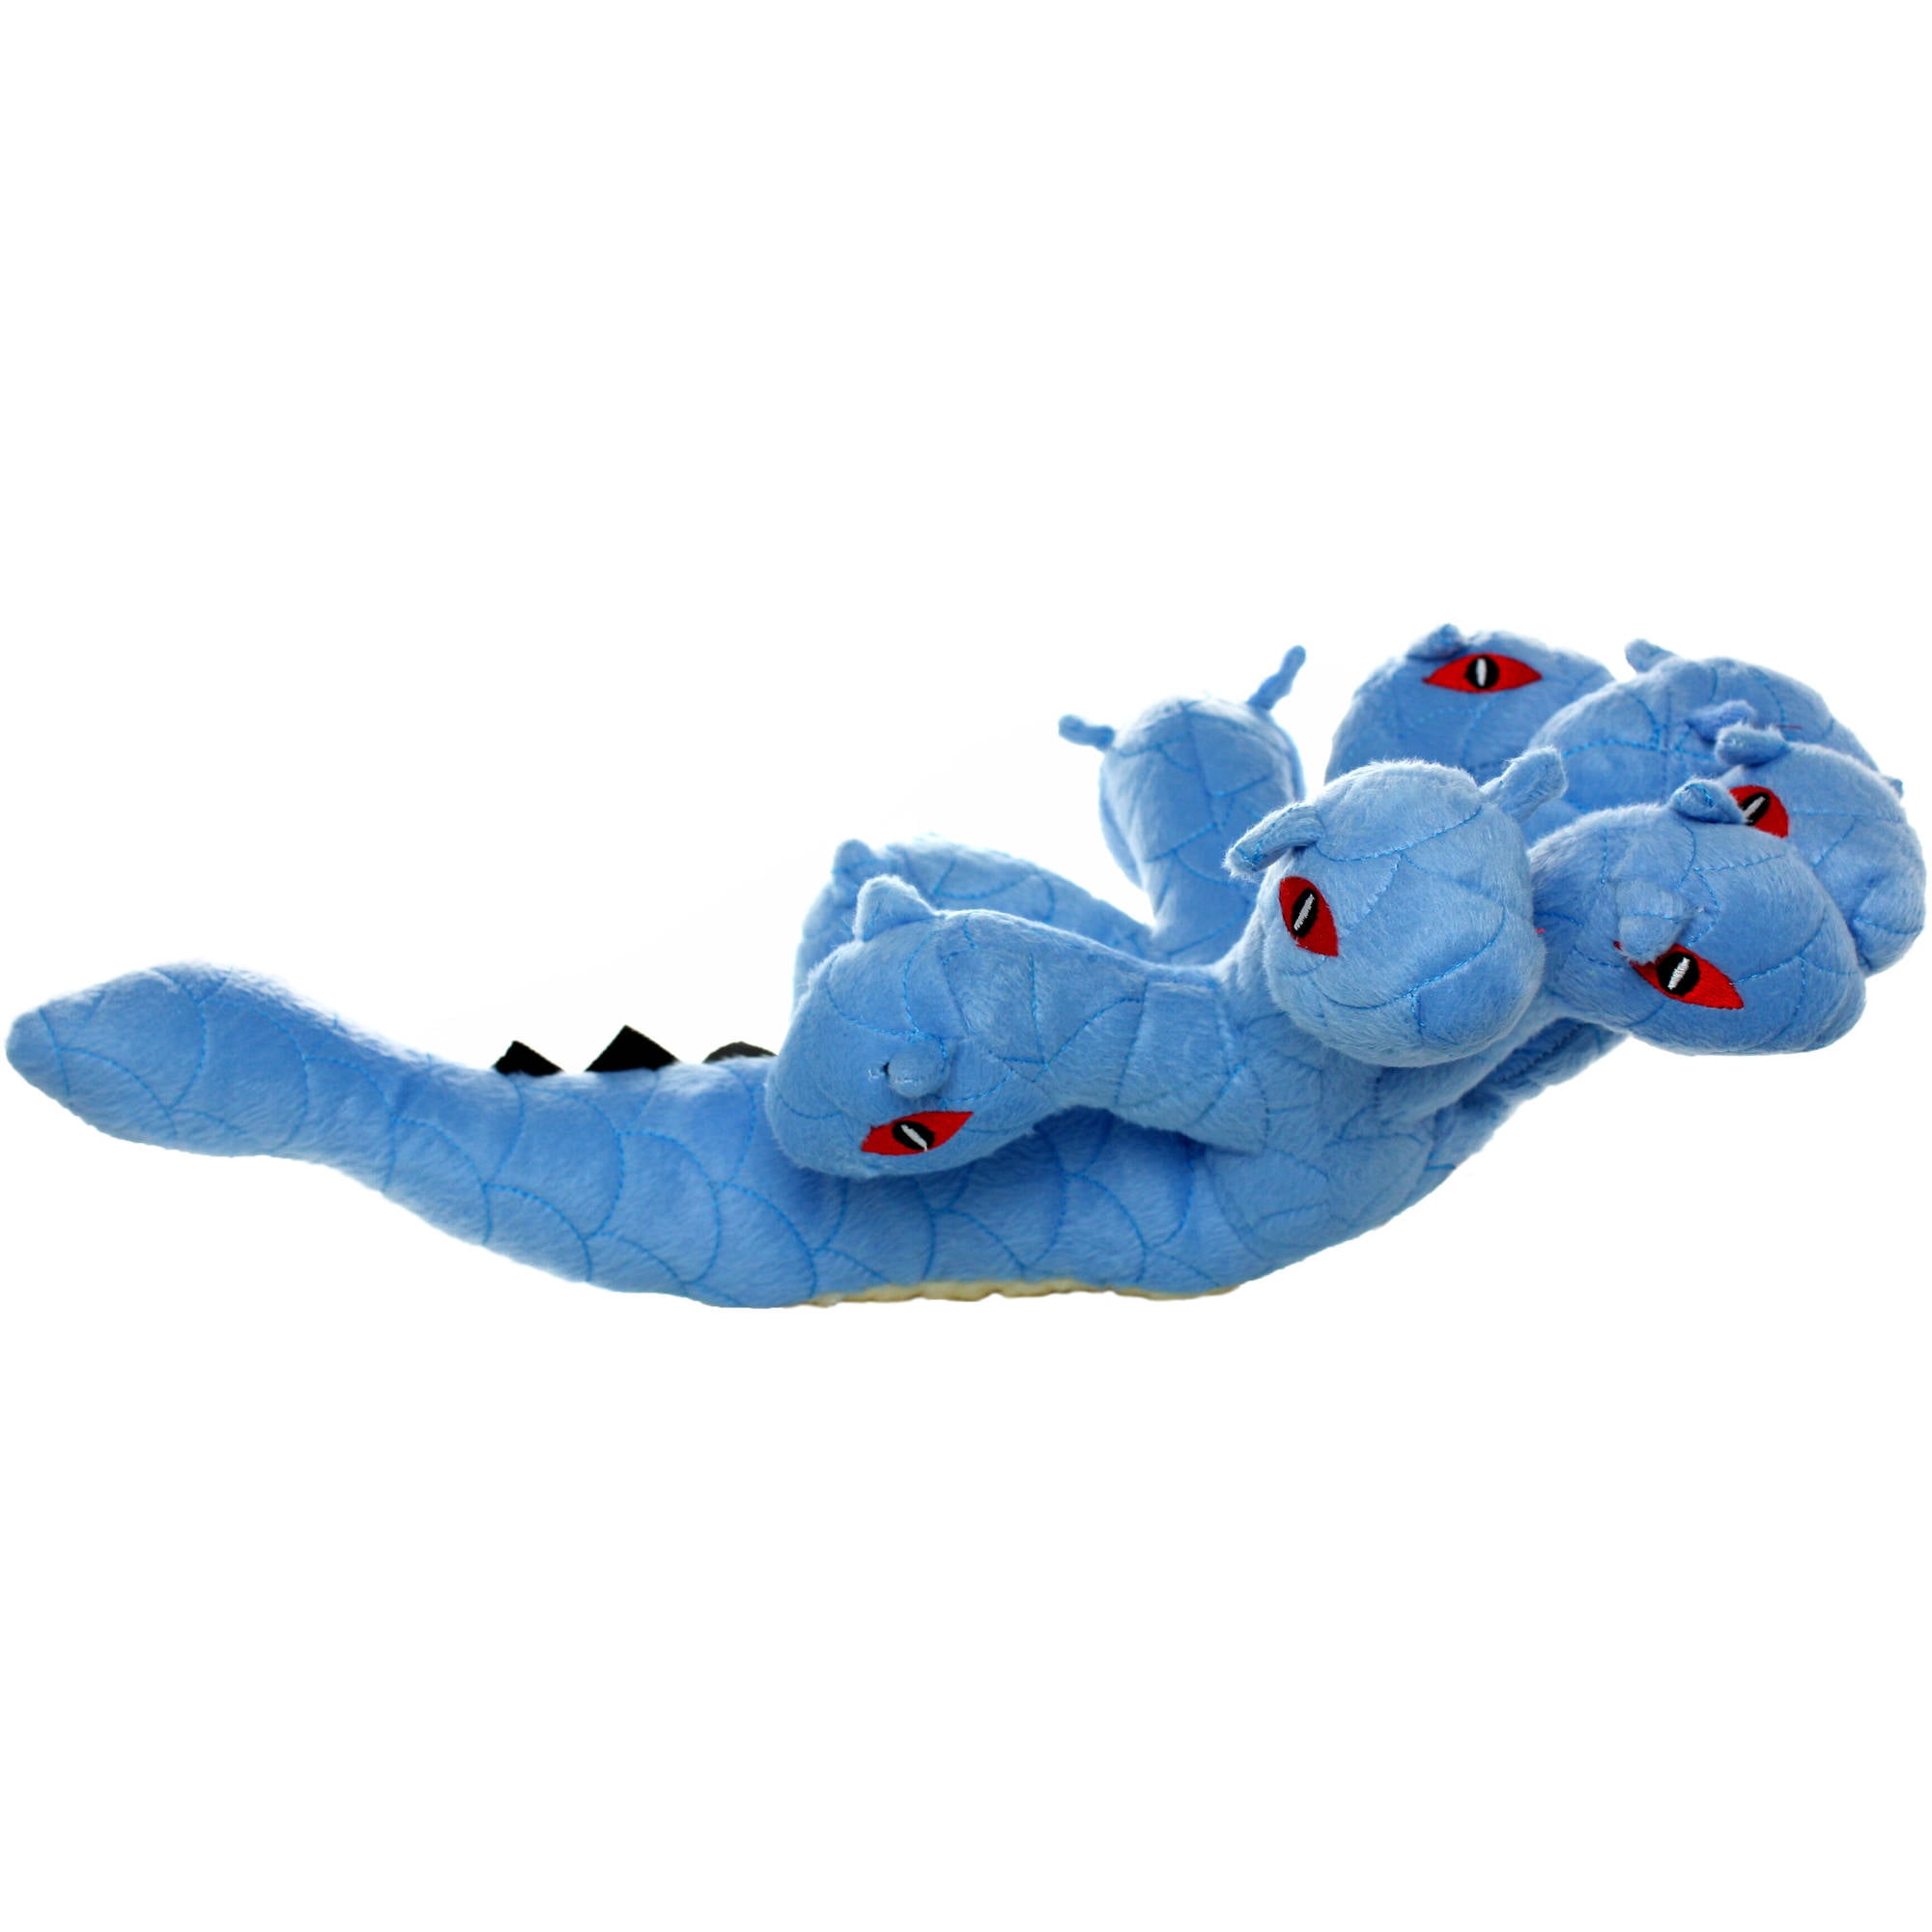 puissant dragon hydra, peluche jouet pour chien Mauritius